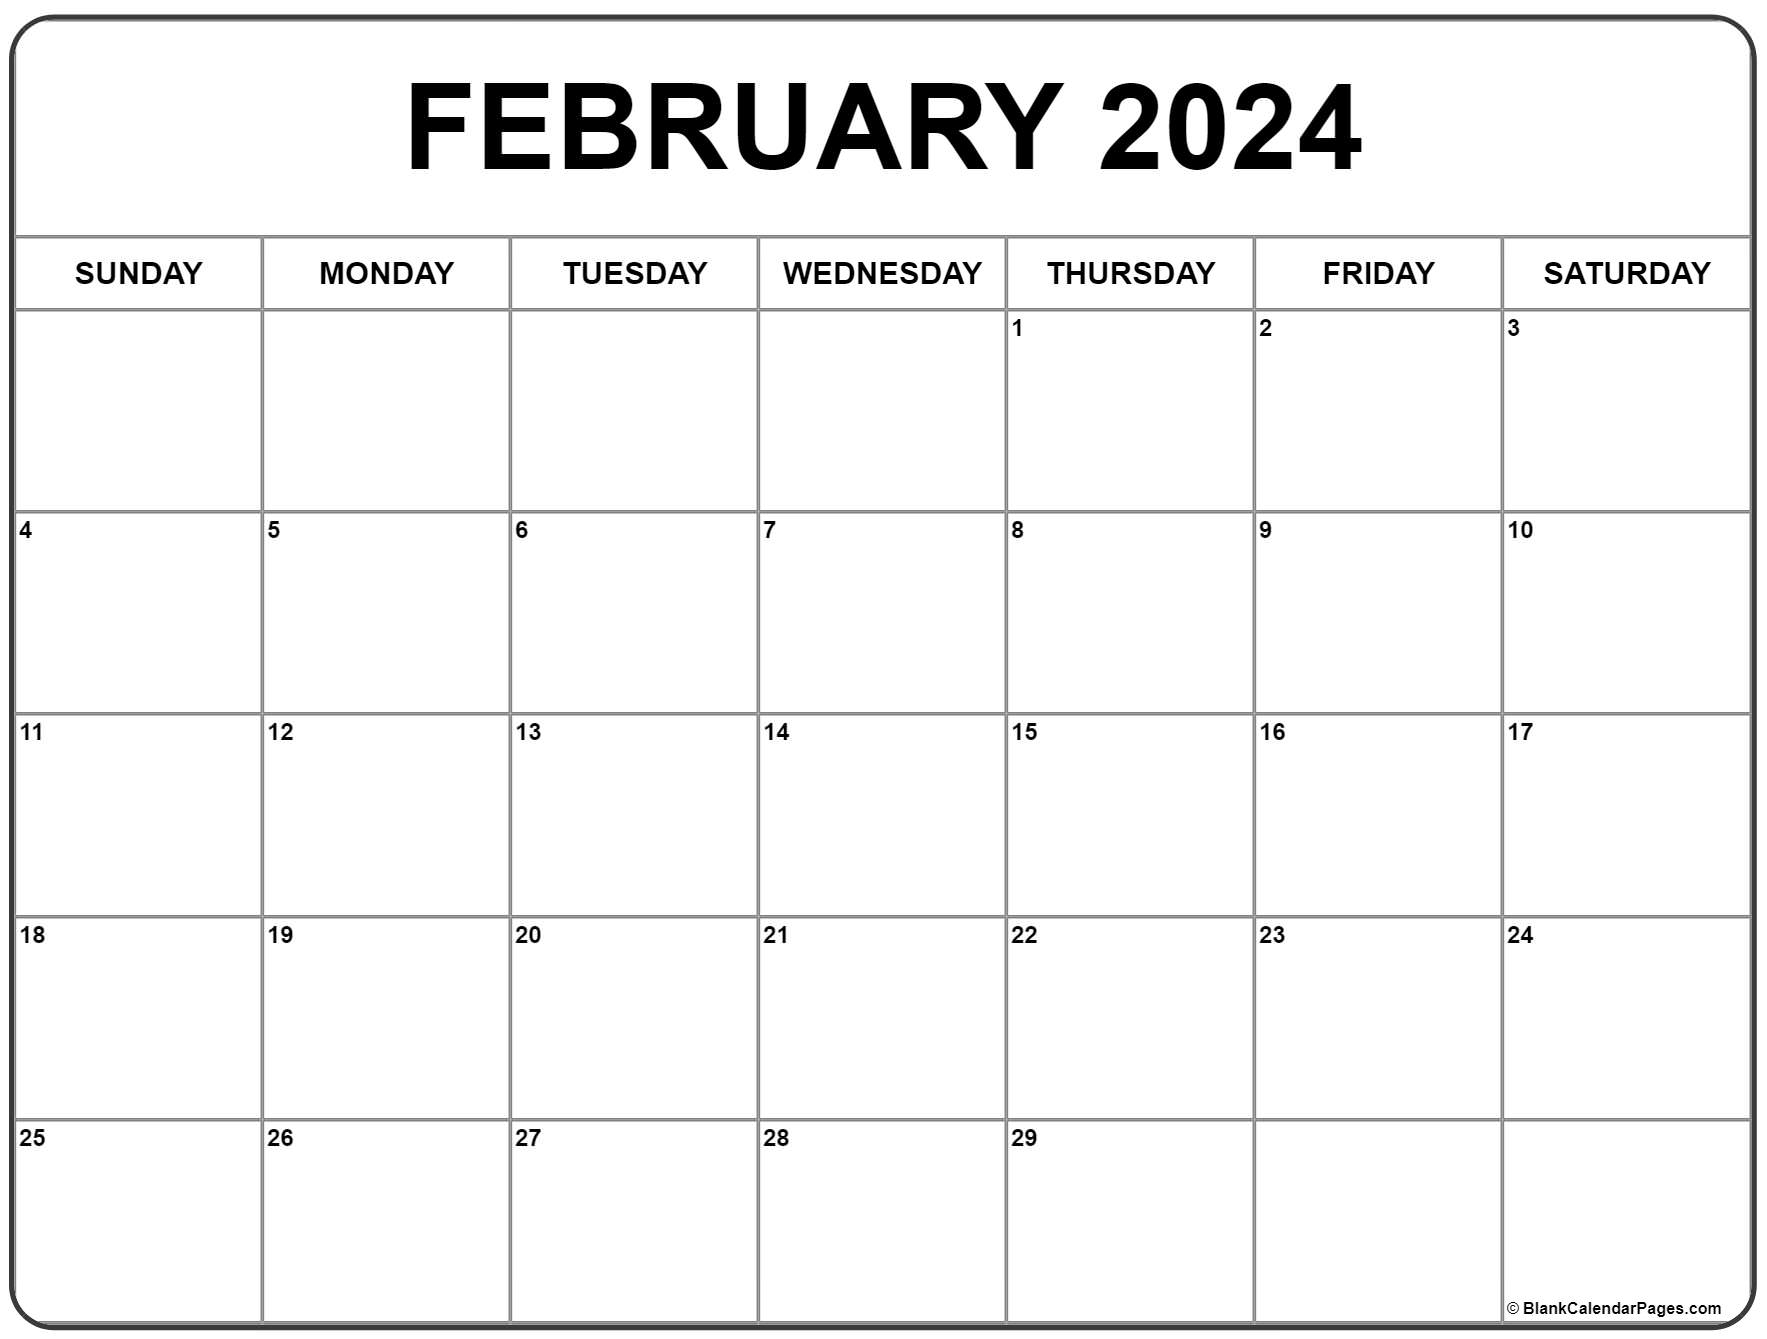 February 2024 Calendar | Free Printable Calendar for Printable Monthly Calendar February 2024